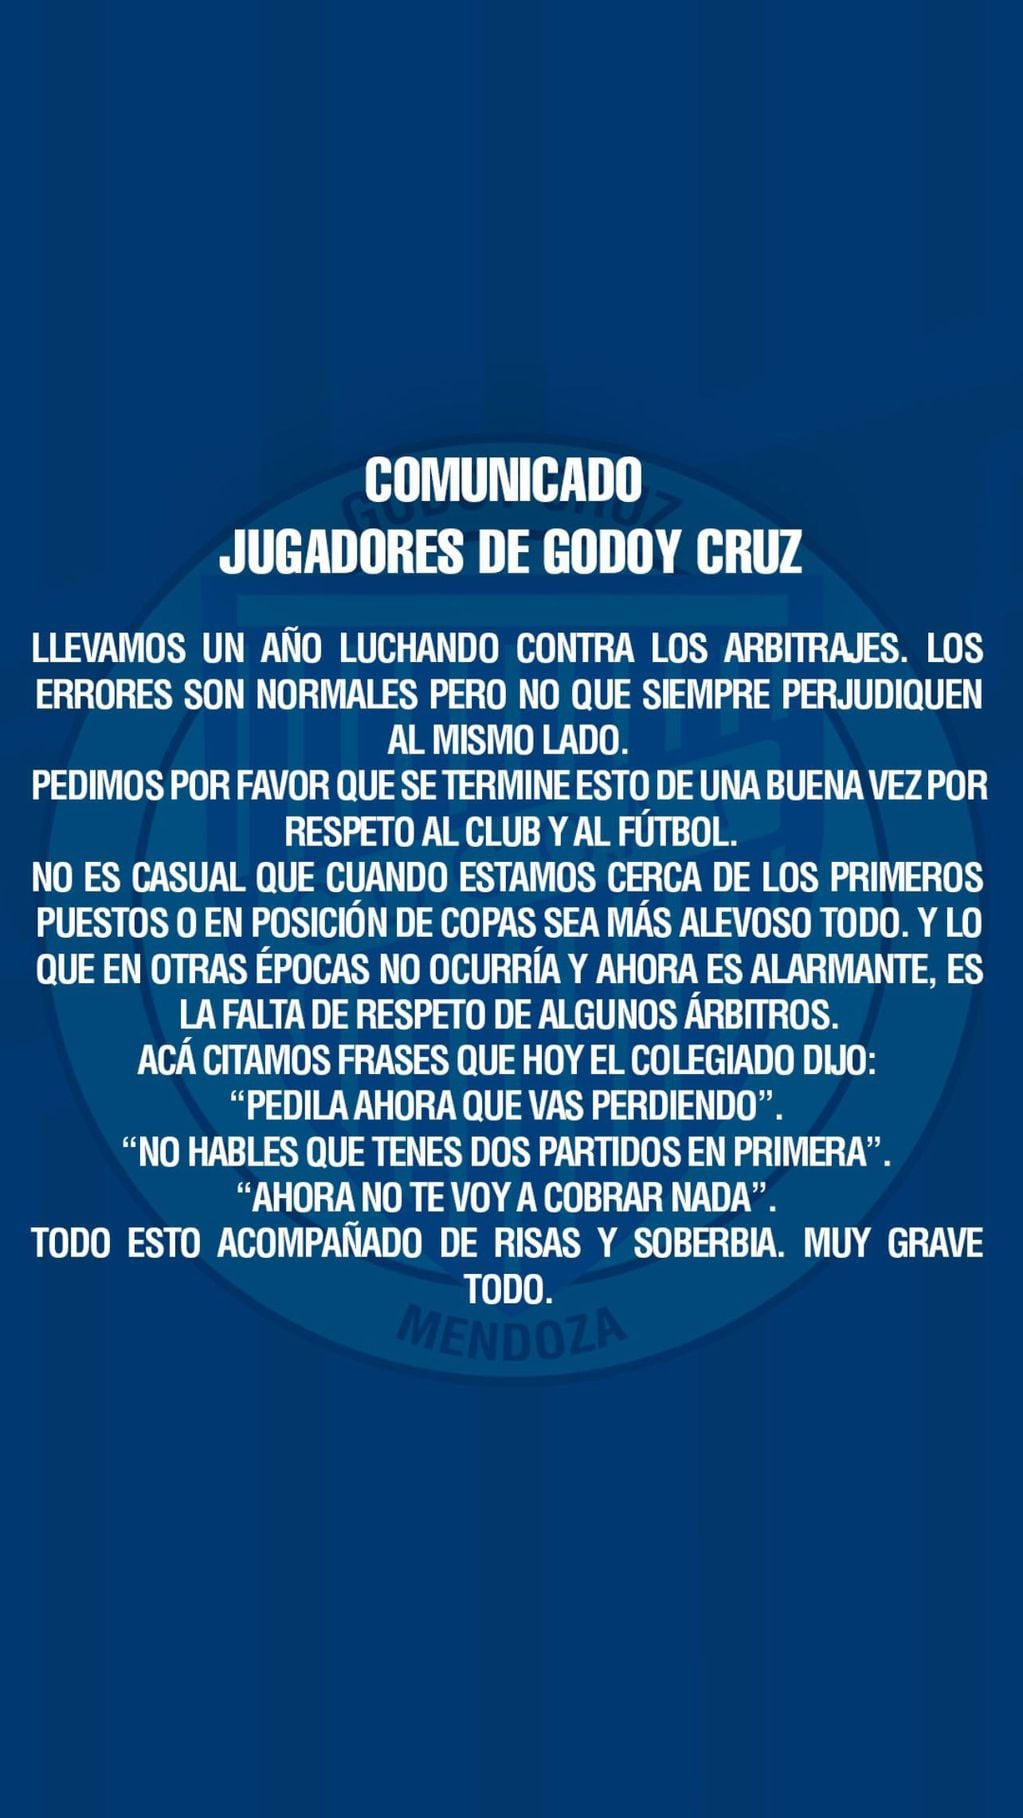 El comunicado que publicaron los jugadores de Godoy Cruz en sus redes sociales.